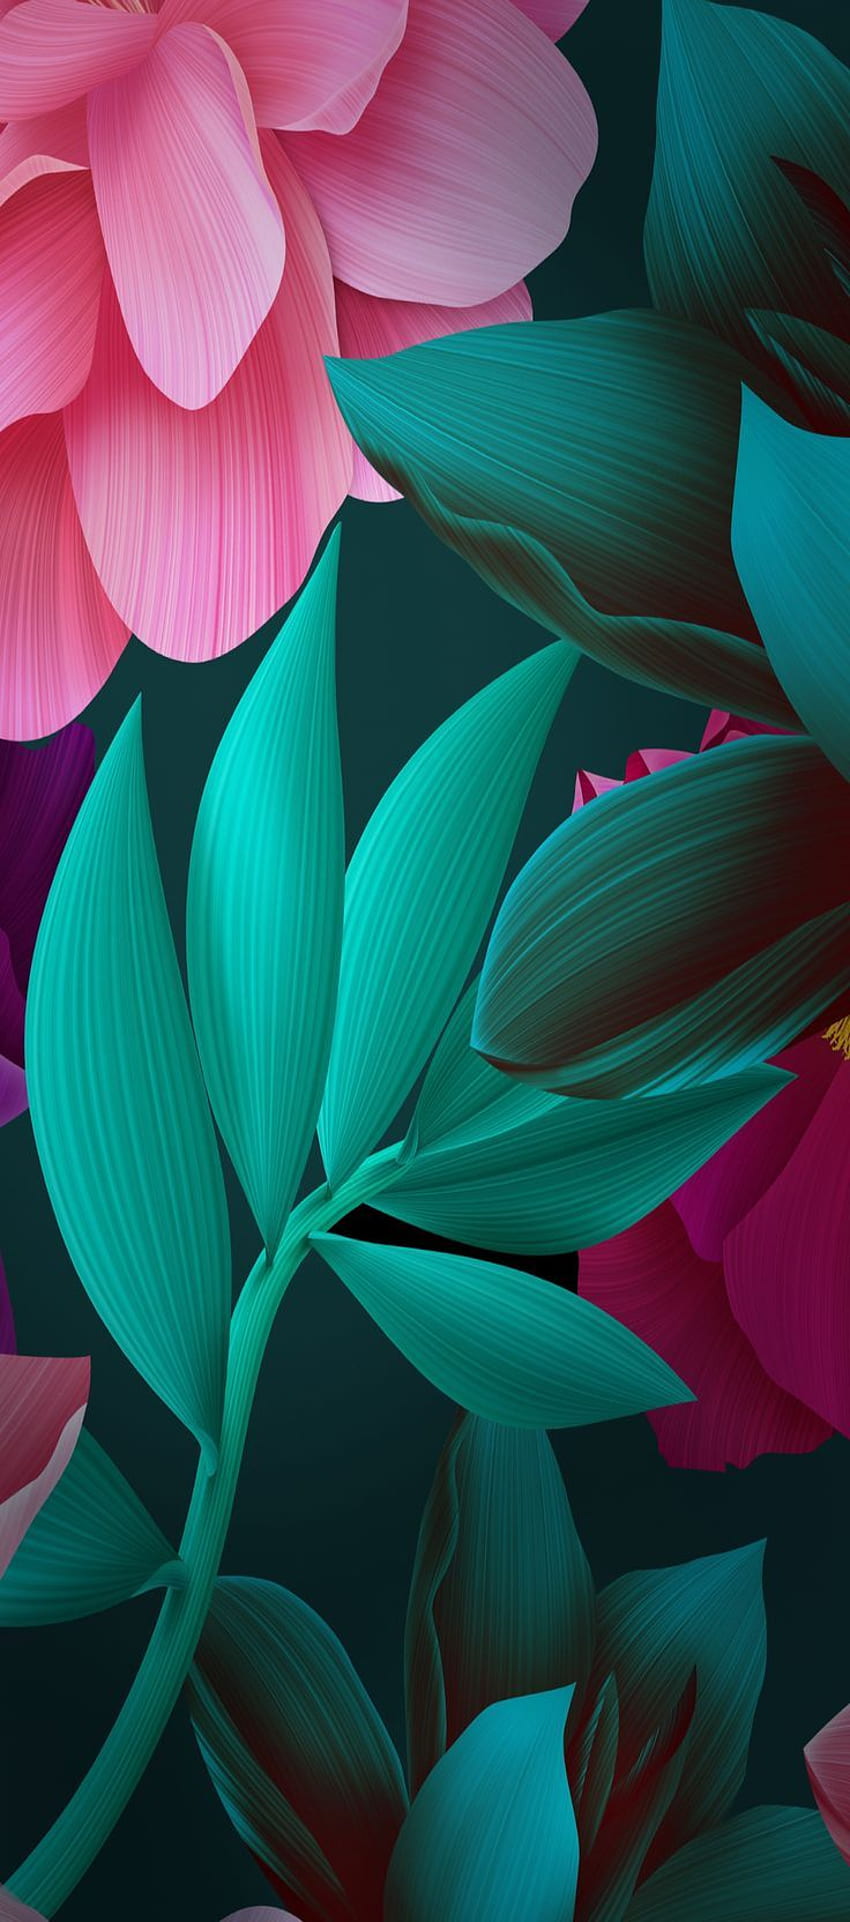 iOS 11, iPhone X, yeşil, siyah, pembe, çiçek, bitki, basit, soyut, elma, , iphone 8, temiz, güzel. Цветочные фоны, Абстрактное, Иллюстрации растений, Siyah ve Pembe Soyut Çiçekler HD telefon duvar kağıdı